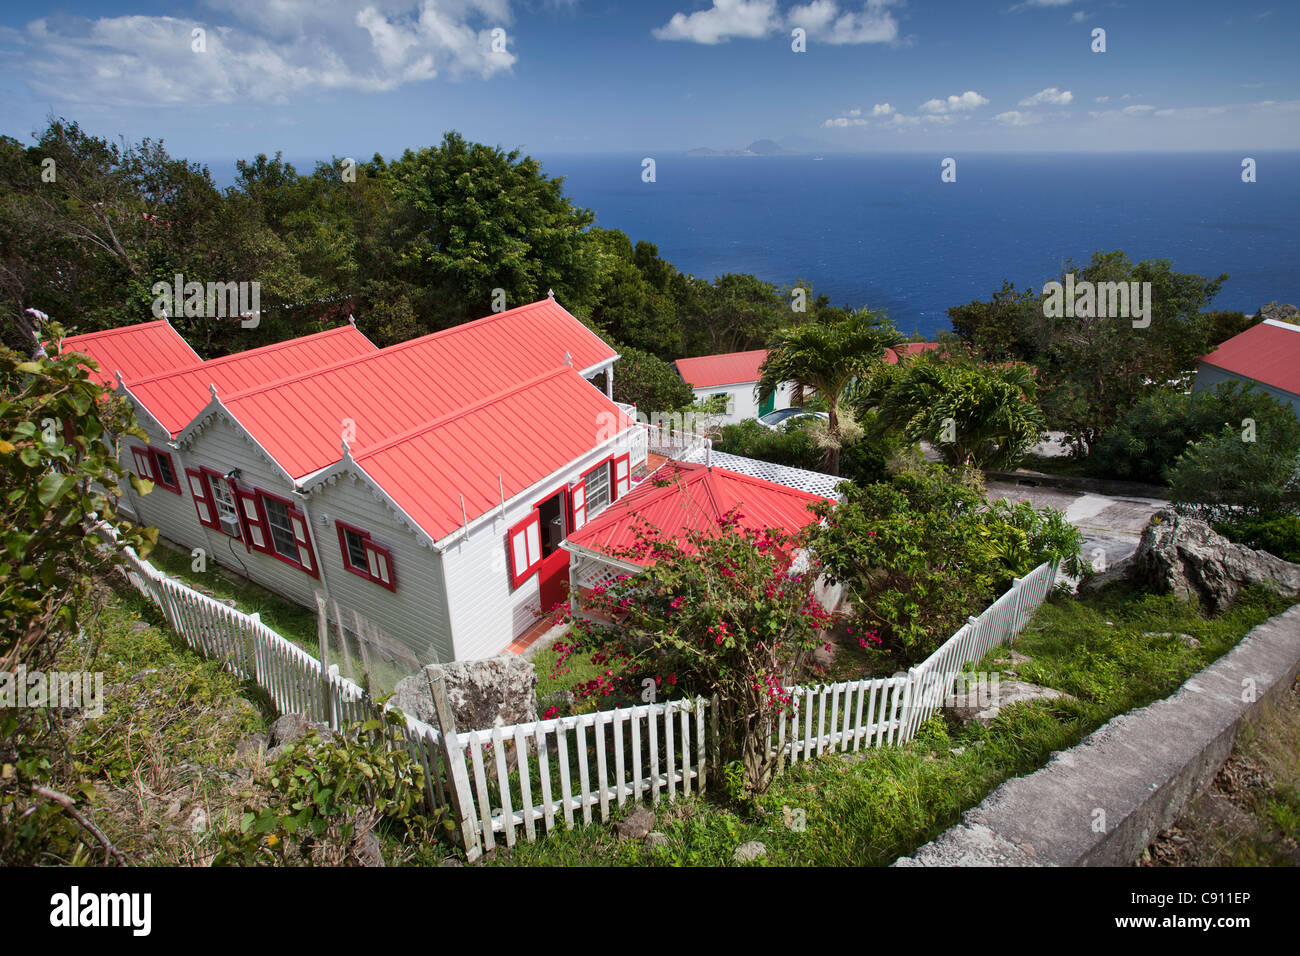 Aux Pays-Bas, La Serena, l'île de Saba, Antilles néerlandaises. Maison d'habitation avec vue sur mer. Banque D'Images